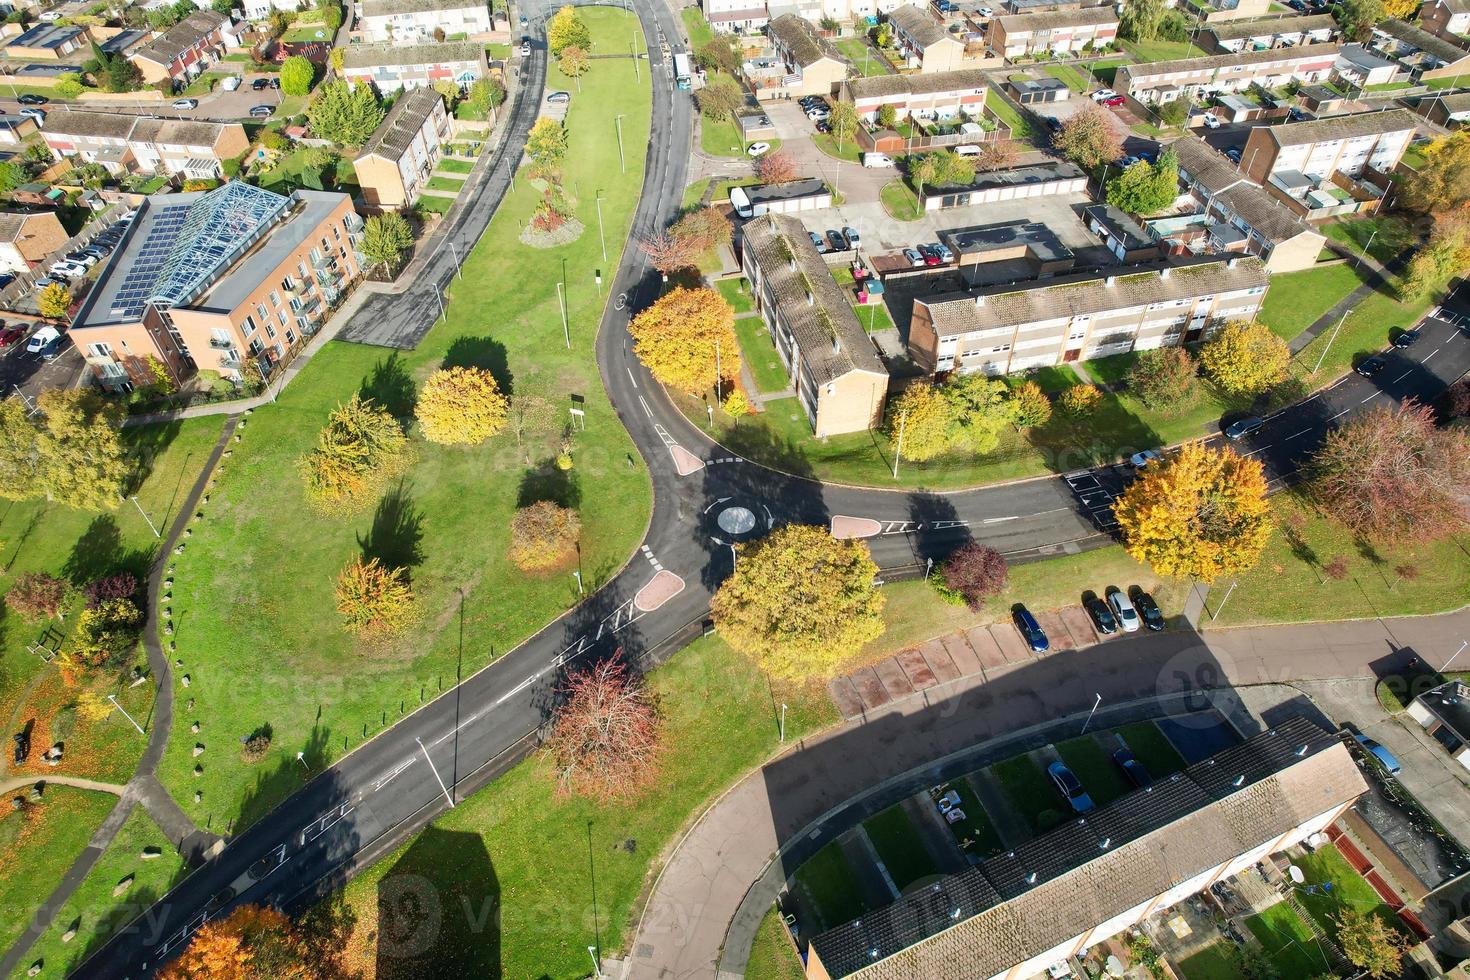 linda vista aérea da cidade britânica, imagens de alto ângulo do drone foto